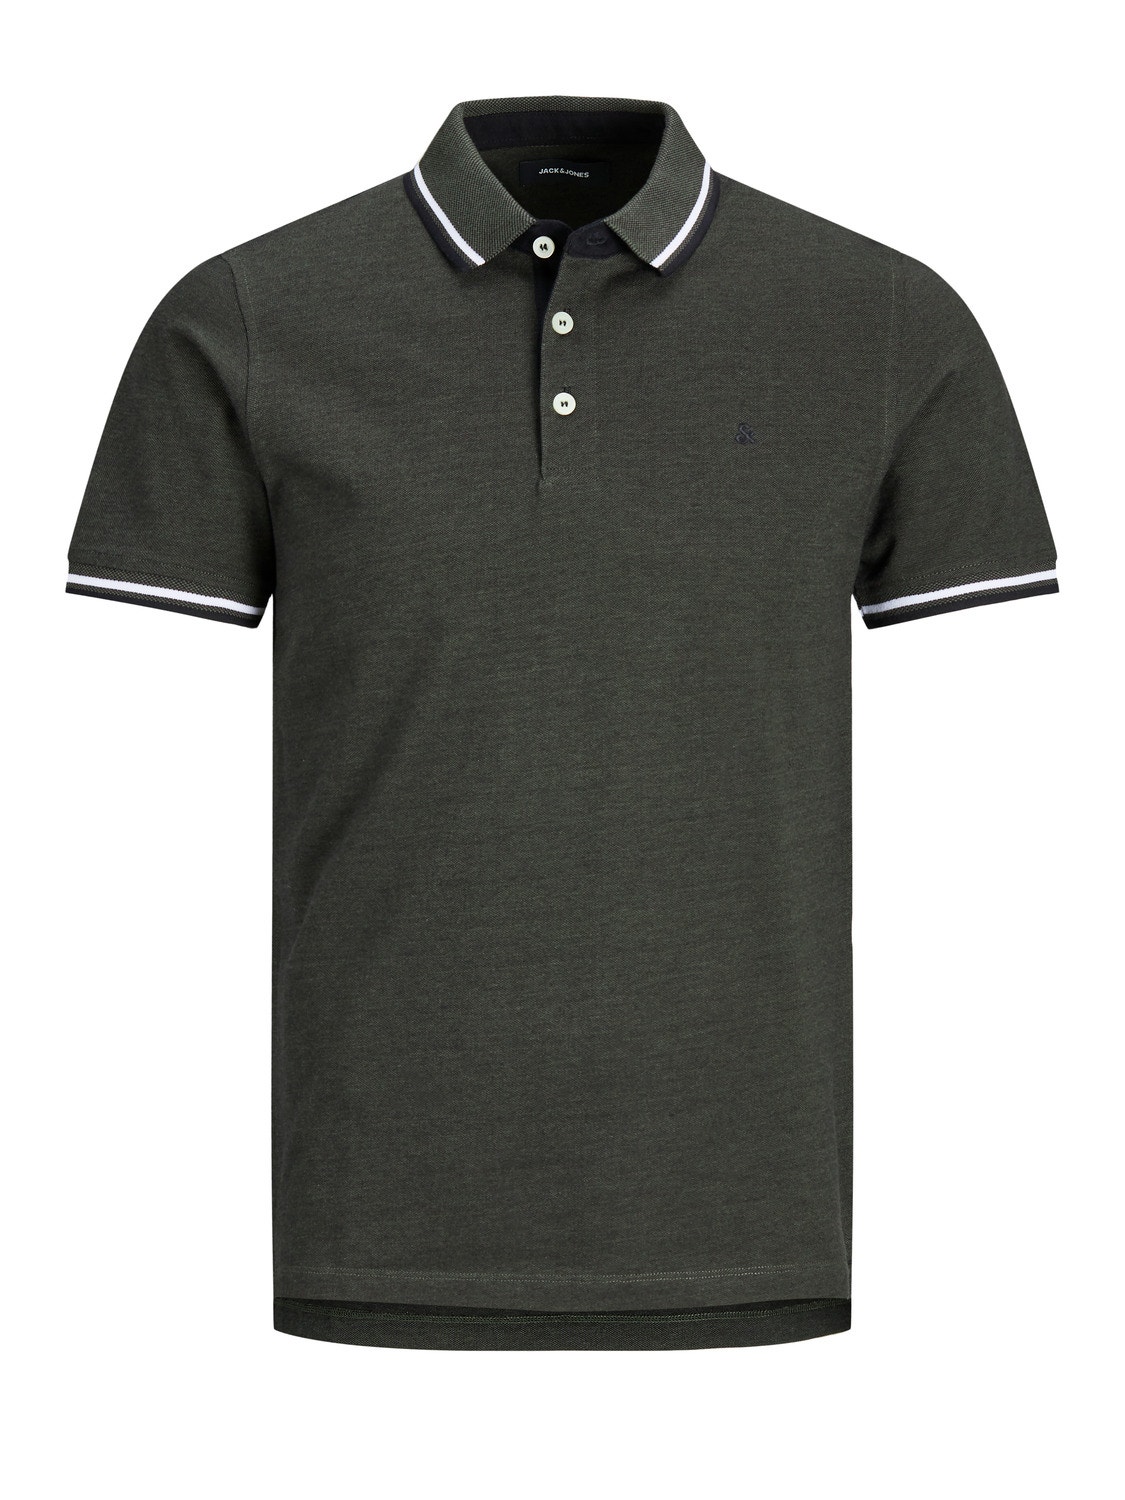 Jack & Jones Confezione da 2 T-shirt Semplice Polo -Navy Blazer - 12191216